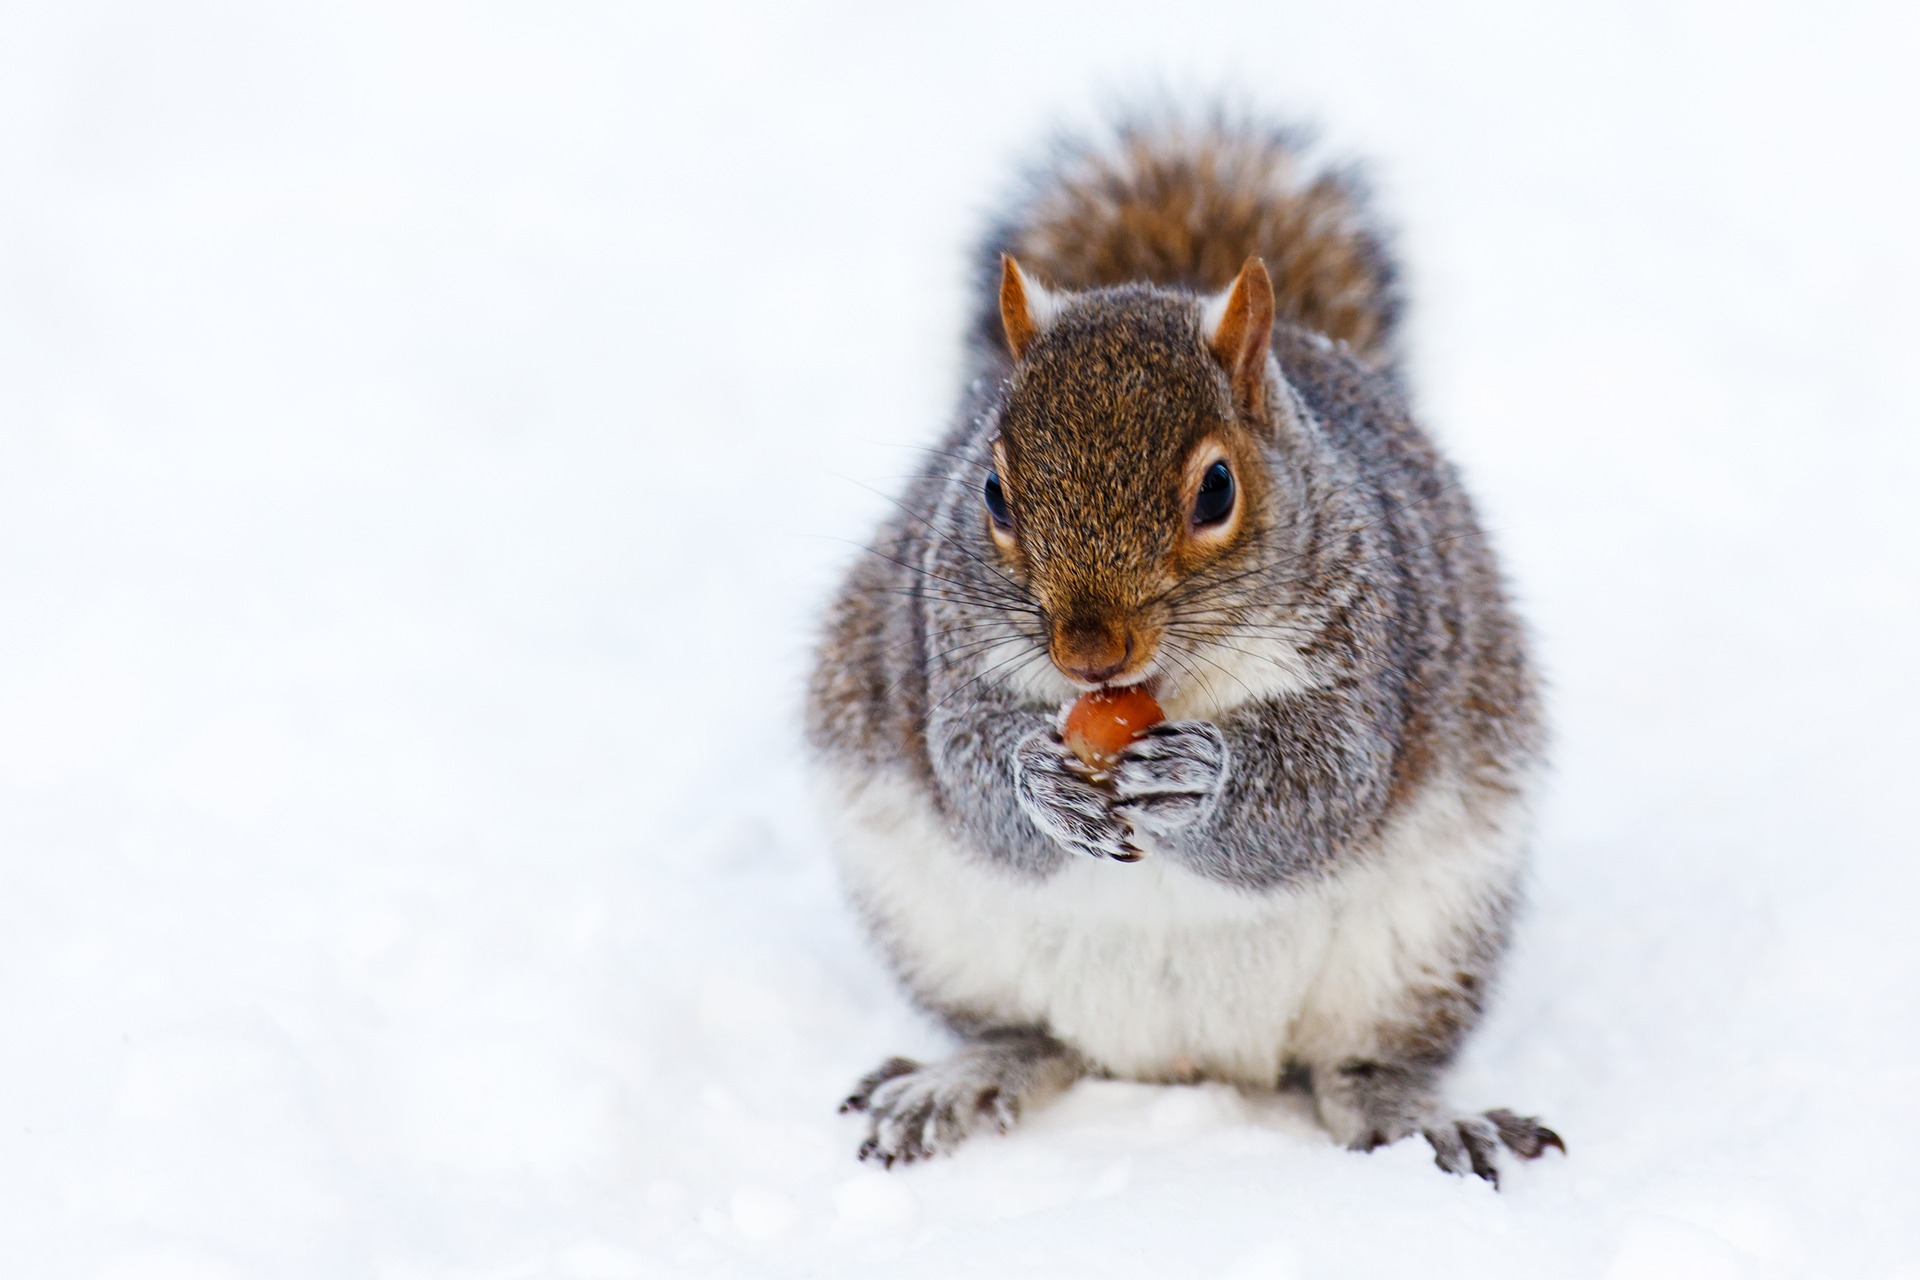 Eichhörnchen sitzt auf Schnee und hält eine Haselnuss in den Pfoten, an der es knabbert